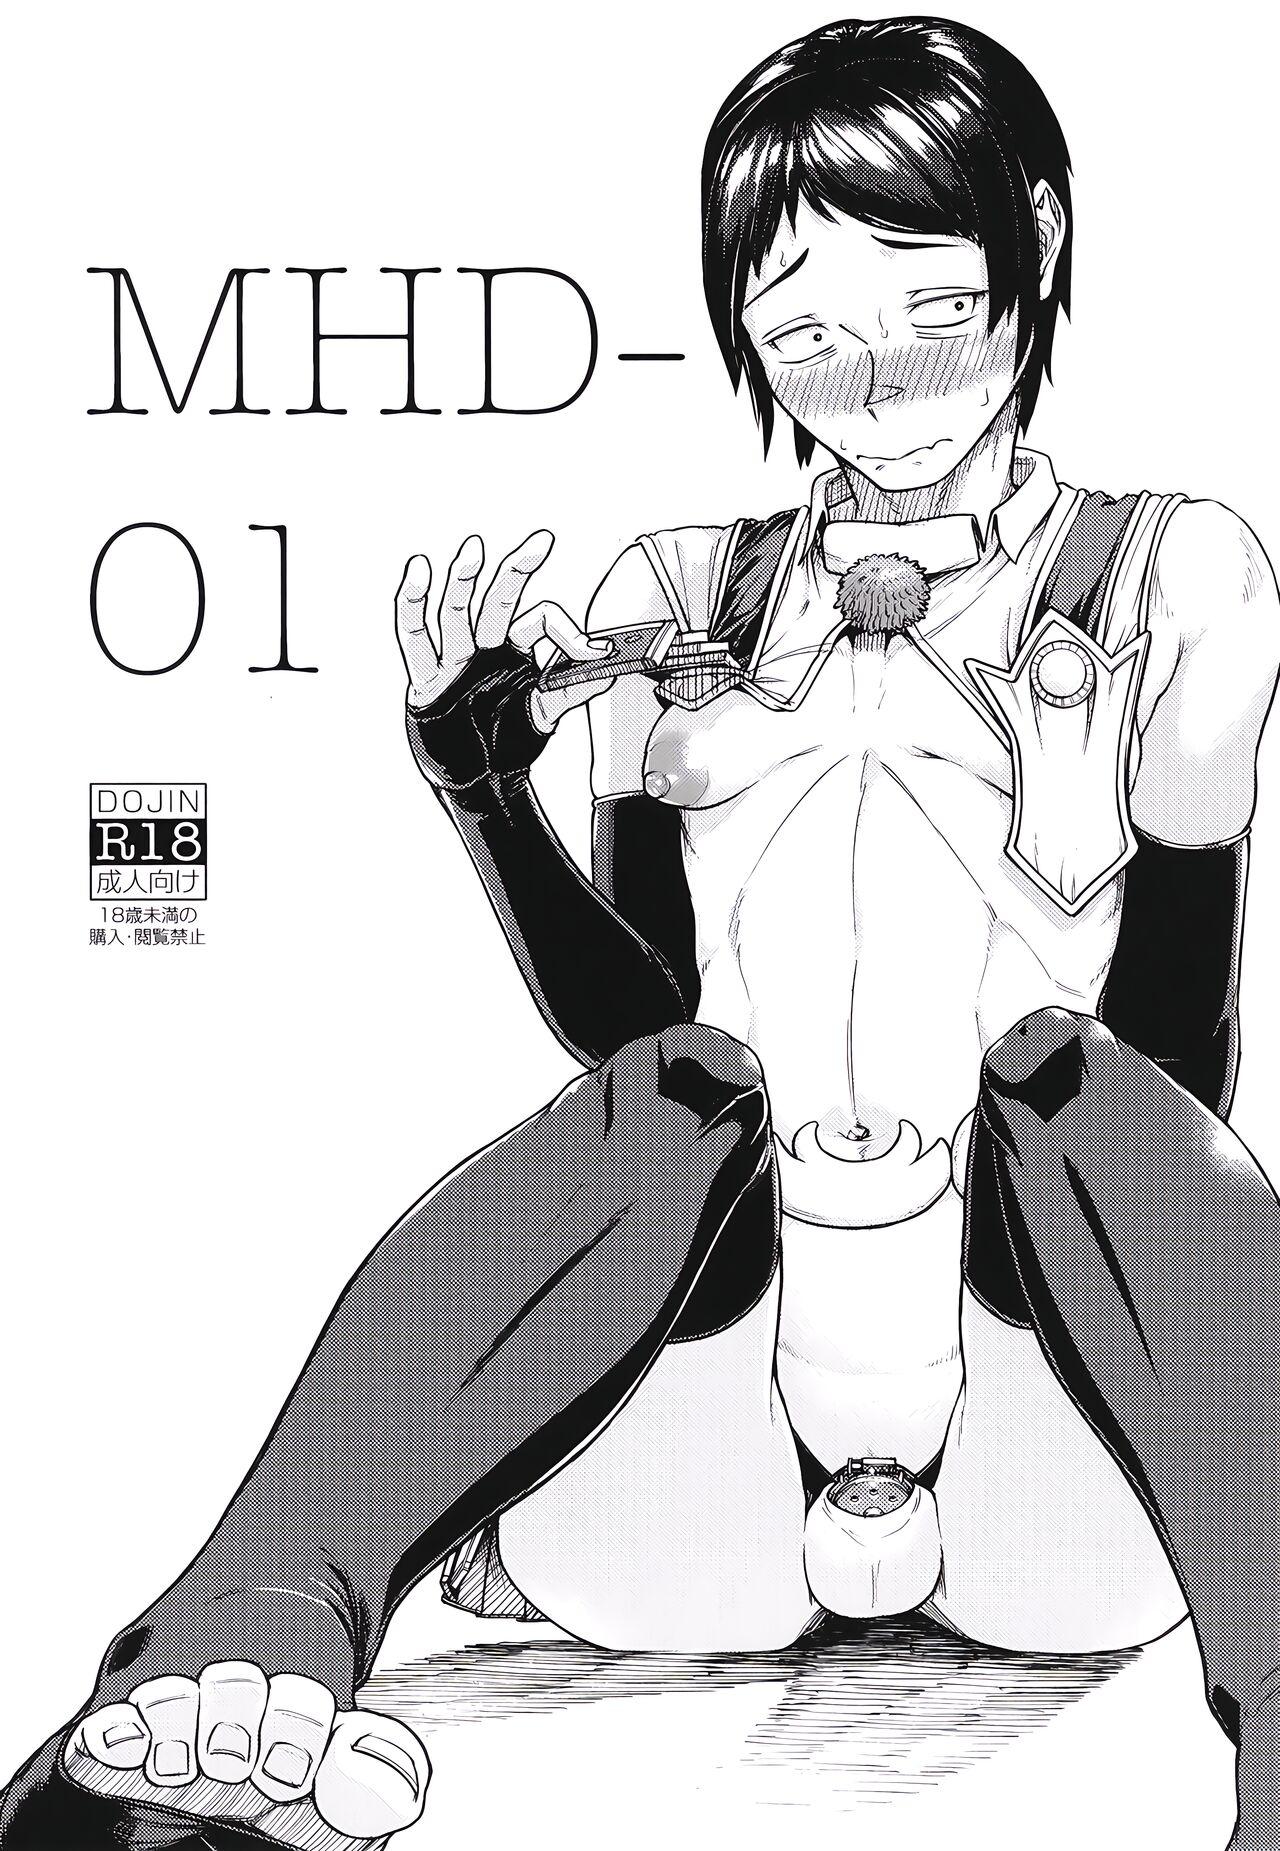 MHD-01 1